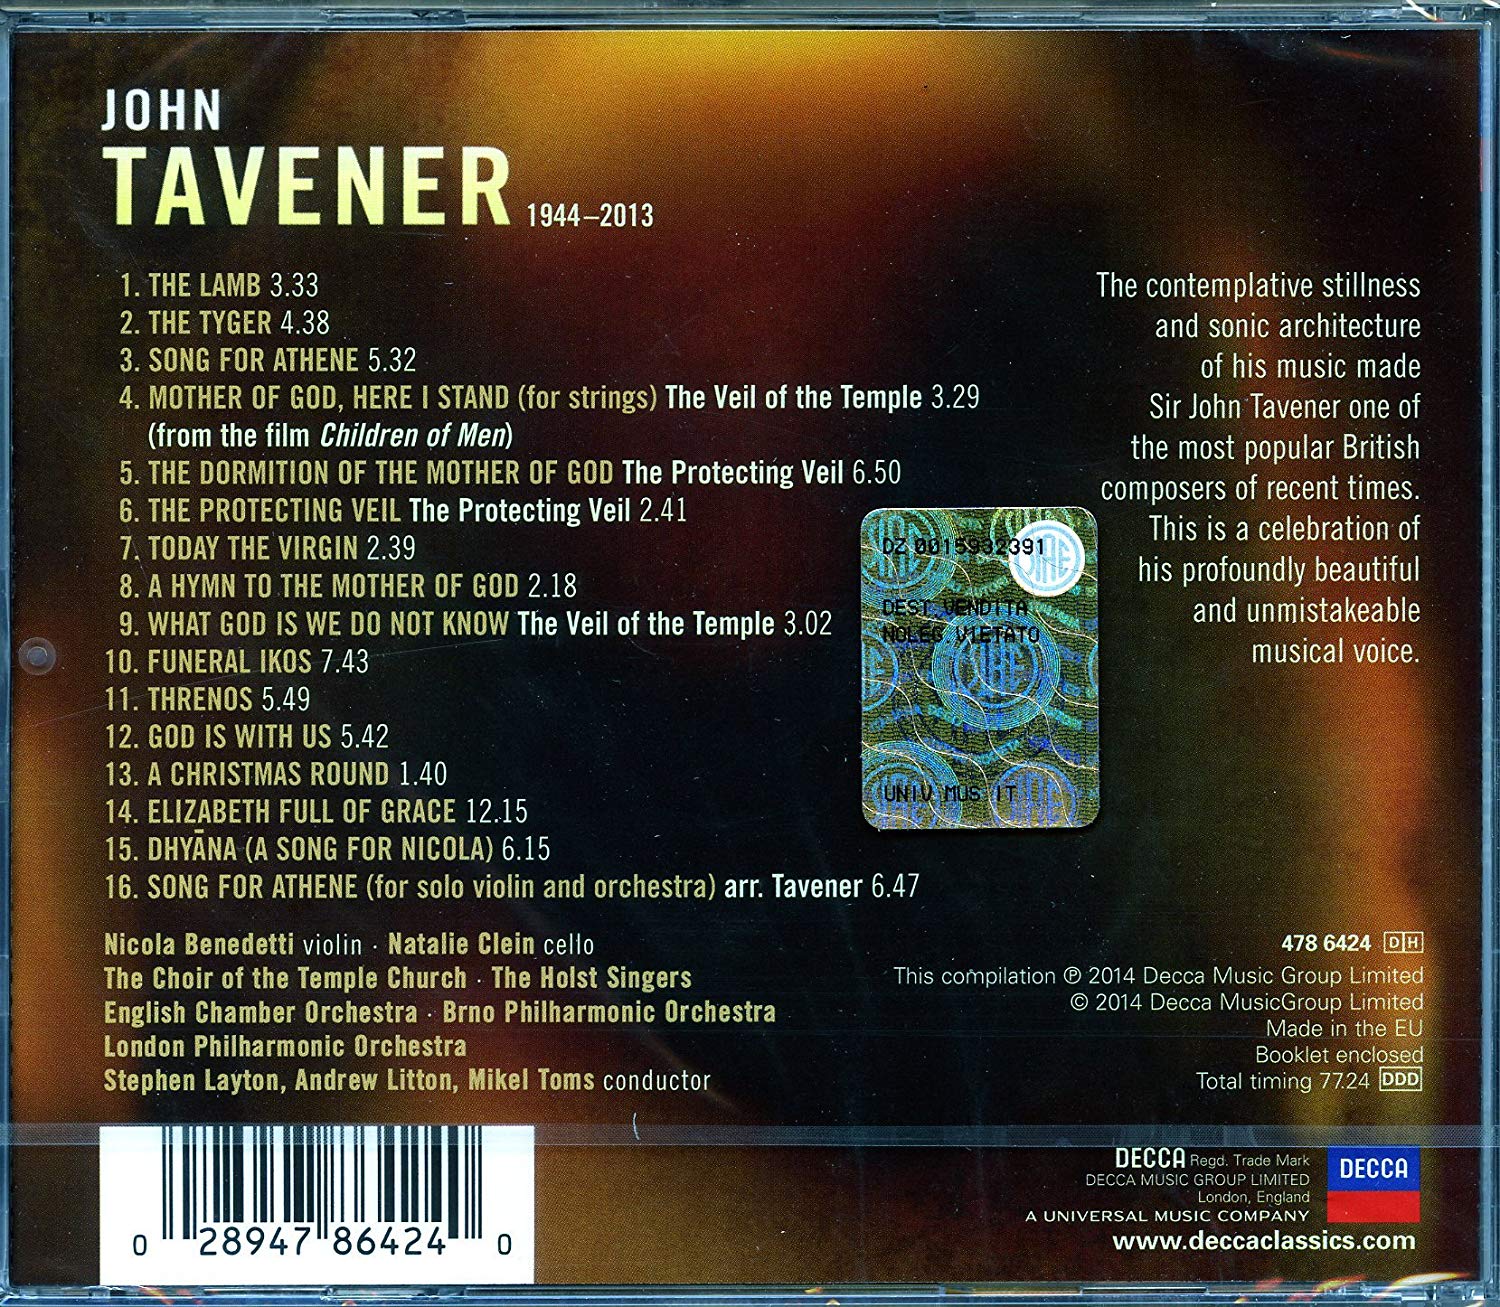 존 태브너 추모 베스트 작품집 (Essential Tavener)